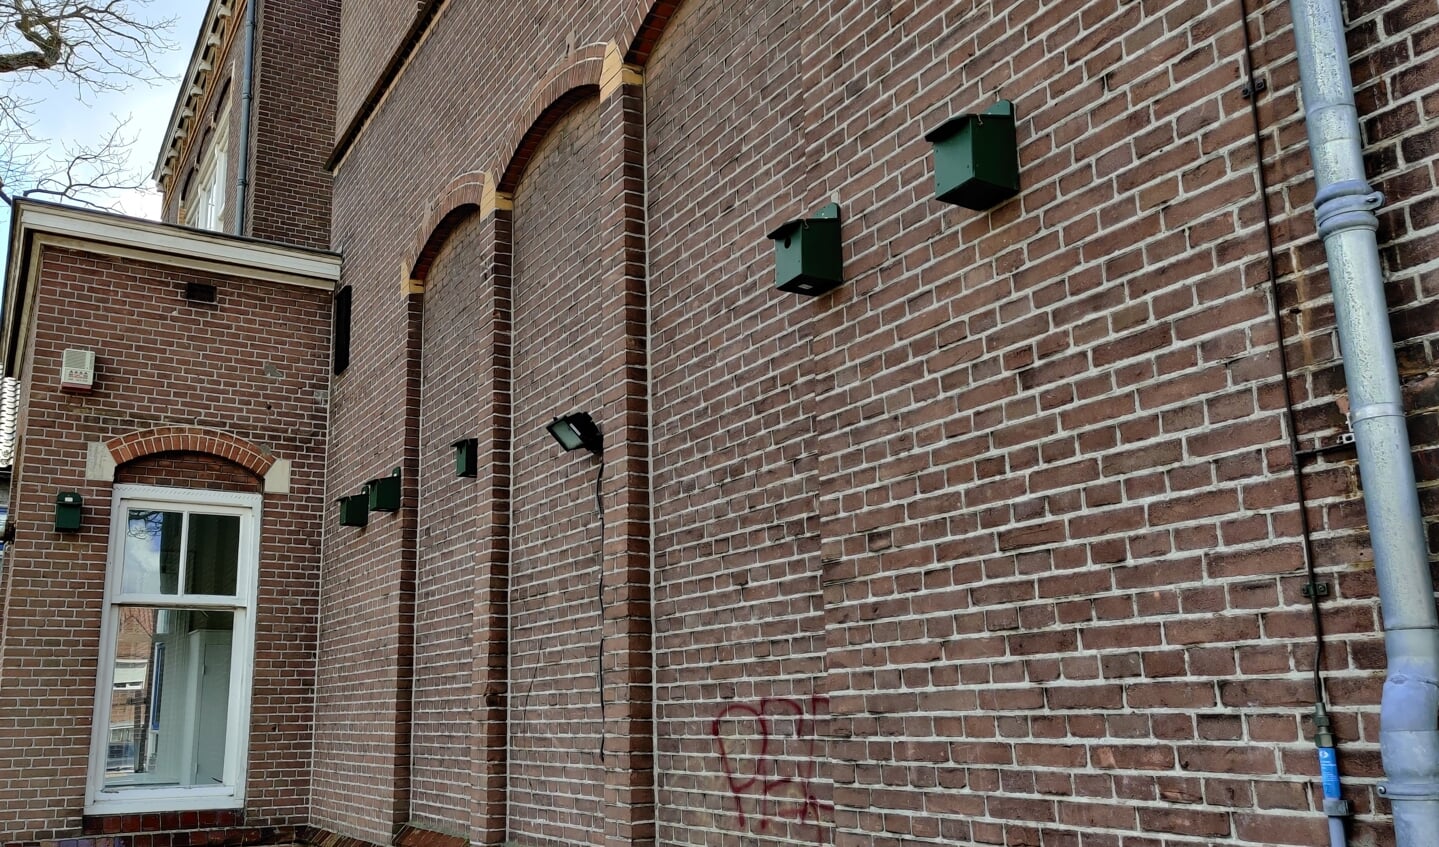 In de directe omgeving van deellocatie Jasmijnstraat 6A zijn meerdere tijdelijke vleermuiskasten opgehangen.